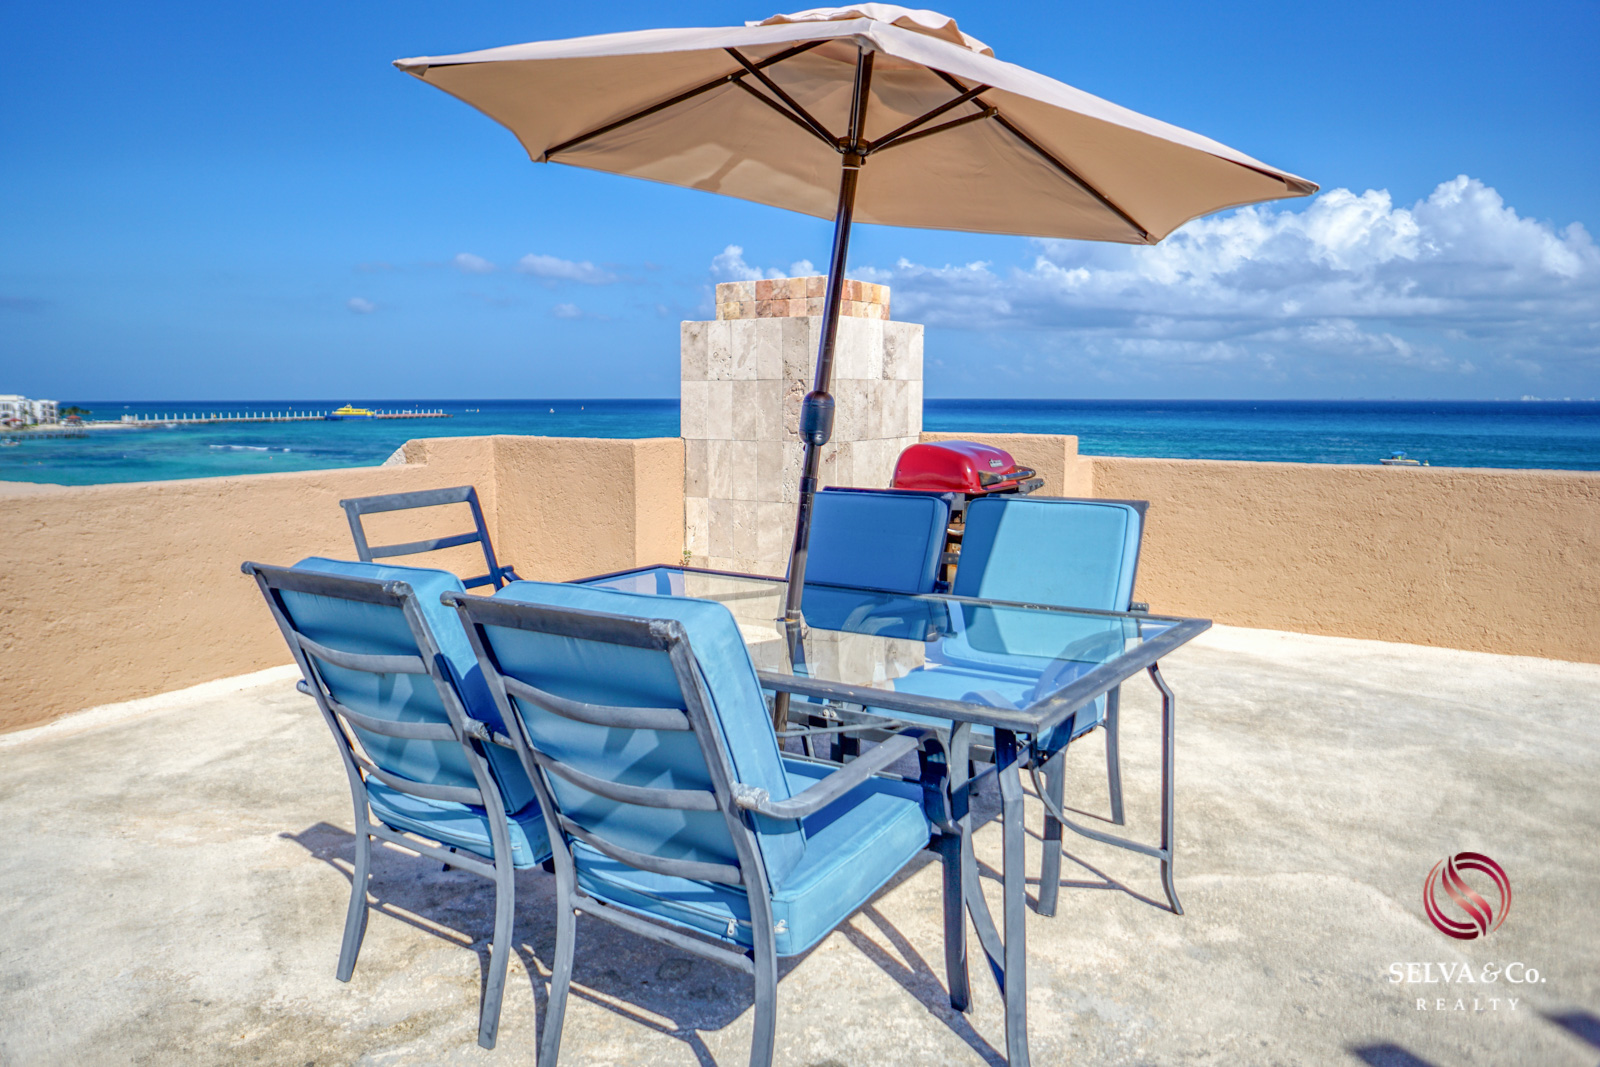 Penthouse frente al mar con jacuzzi, 2 terrazas, acceso a mar, club de playa, gimnasio, business center, concierge  y mas en venta Playa del